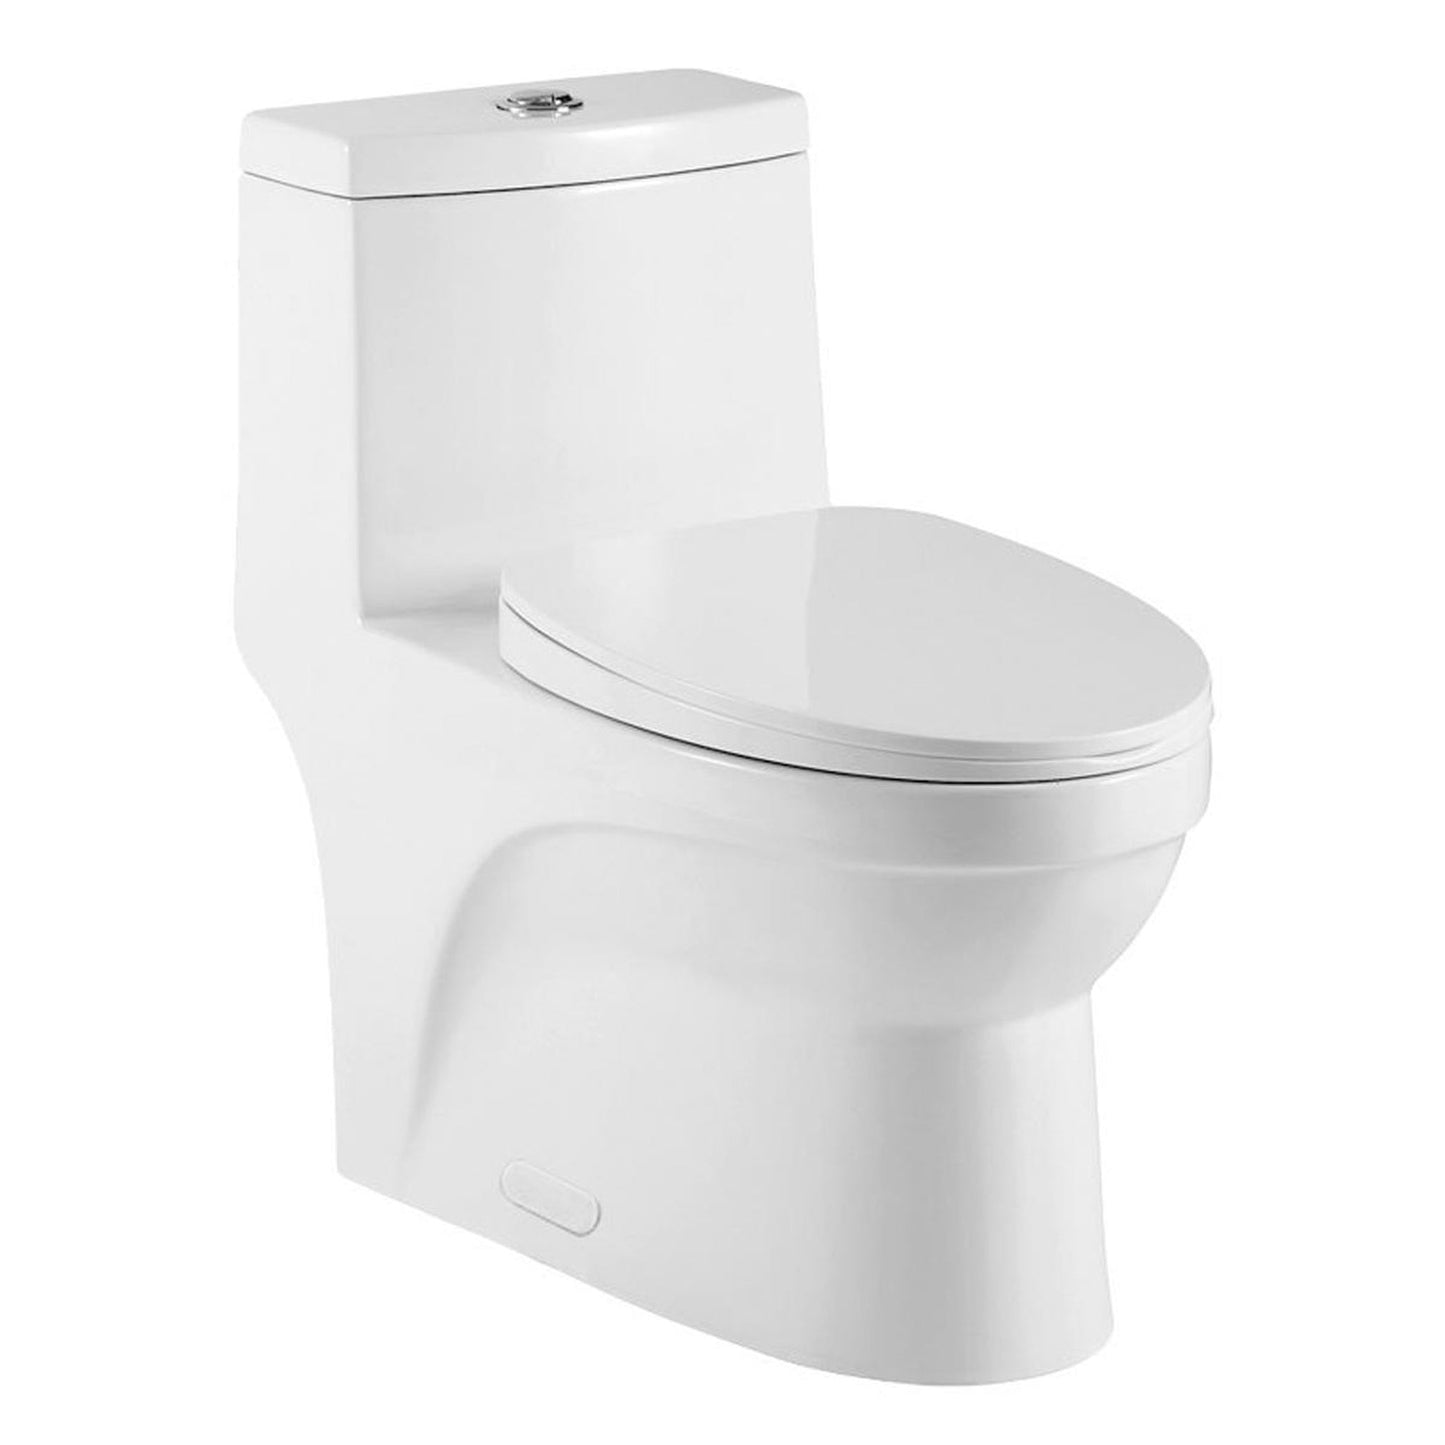 Pelican Int'l Vortex Series PL-12050 White ADA Compliant Porcelain High Efficiency Toilet with Dual Flush